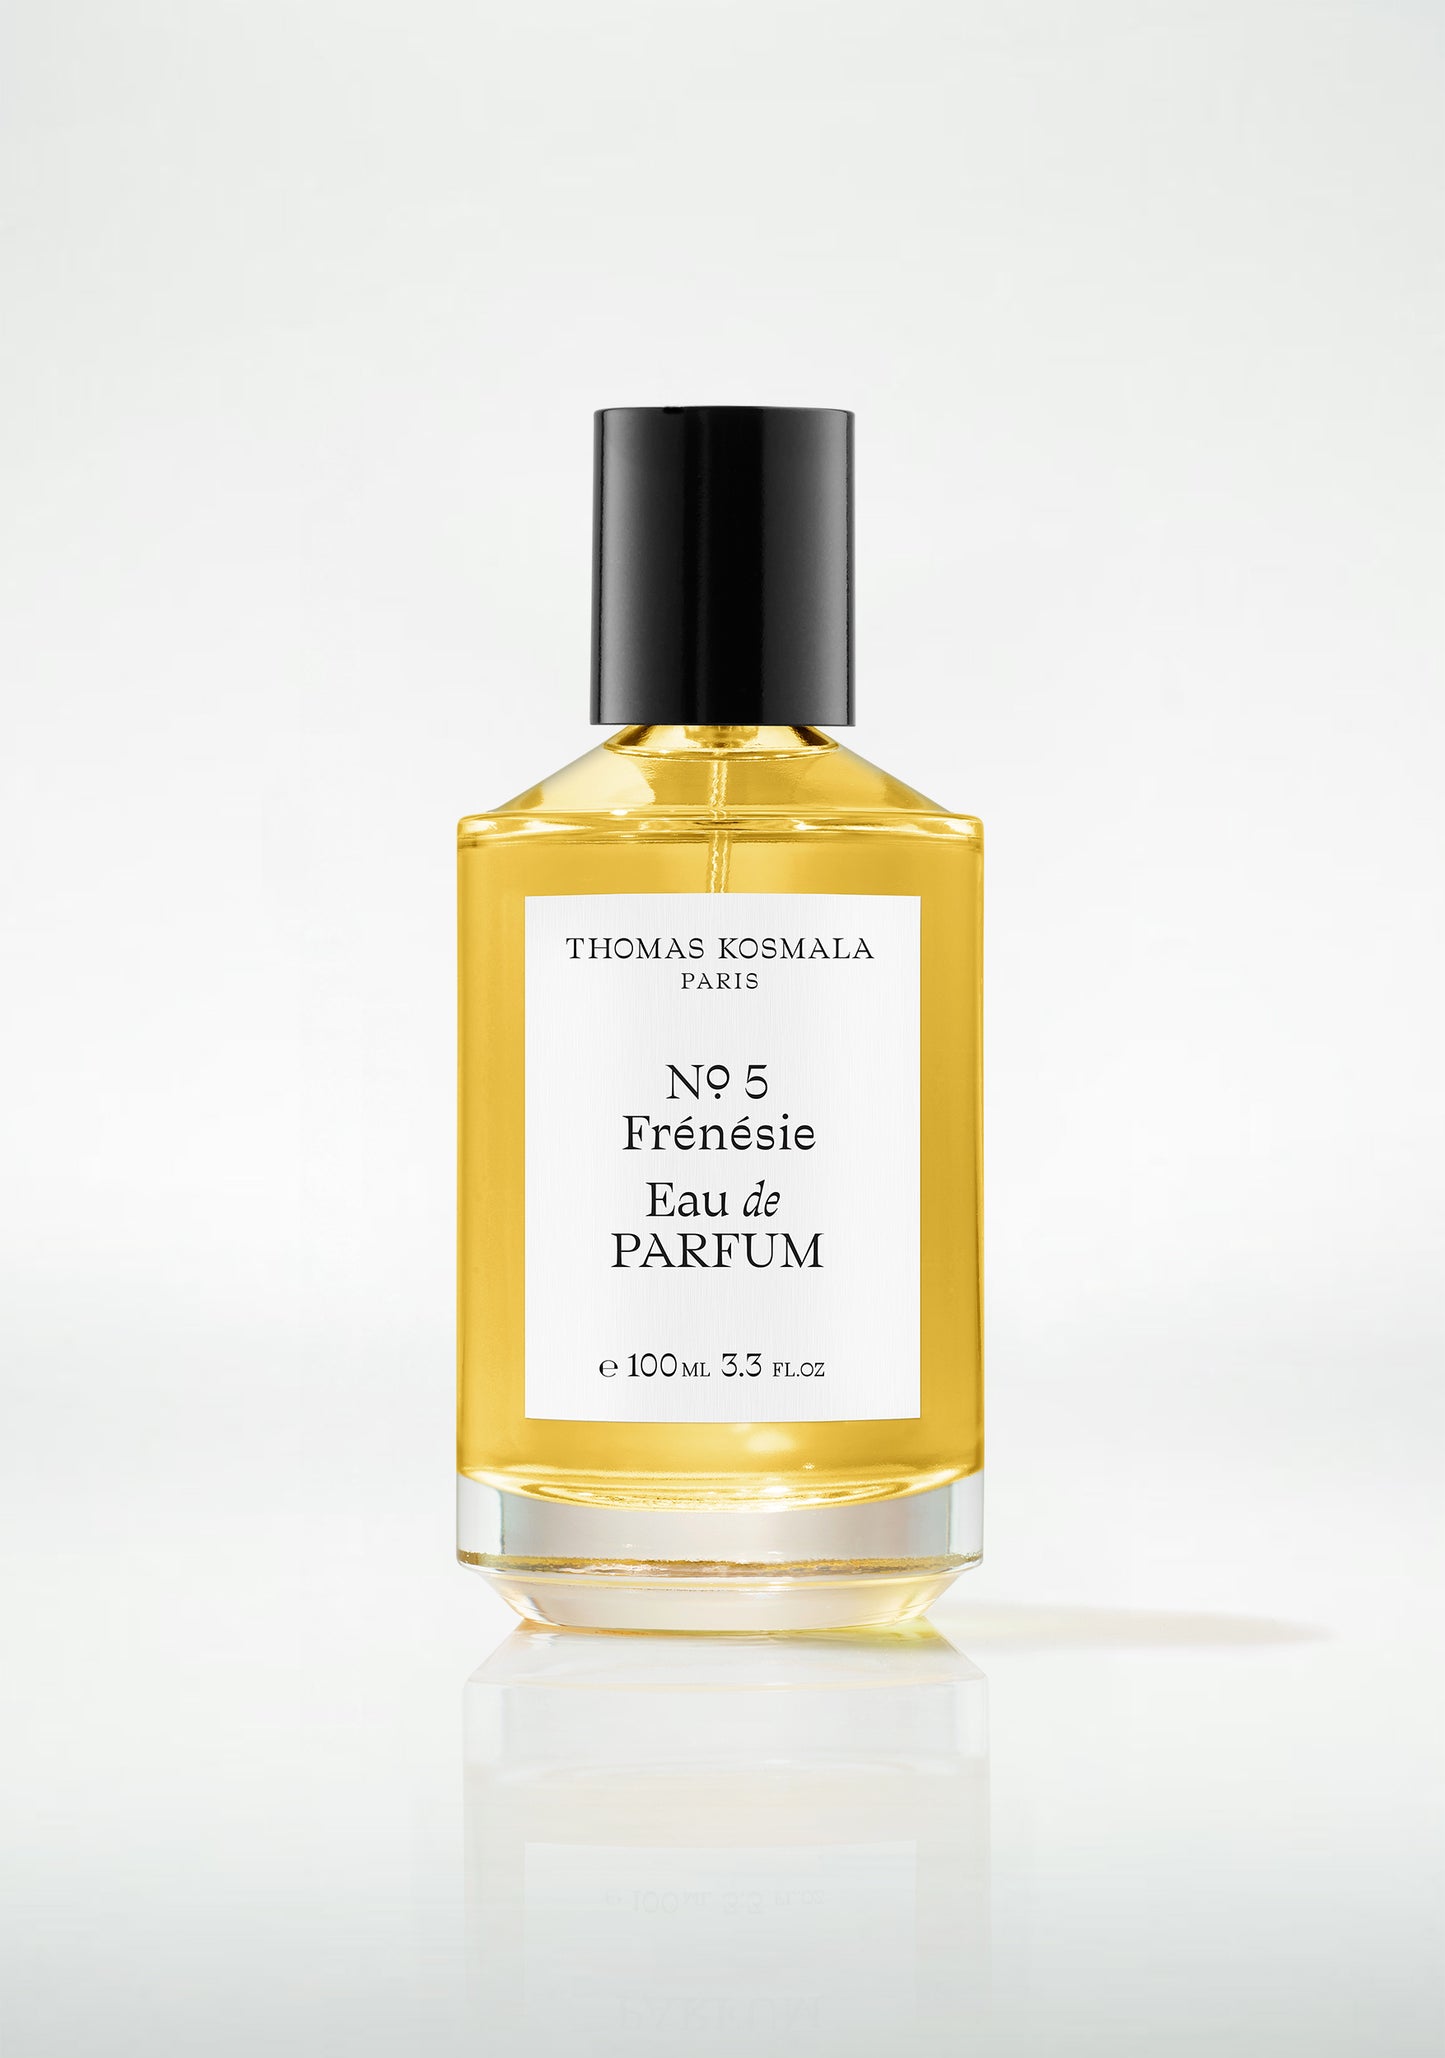 No. 5 Frénésie Eau de Parfum